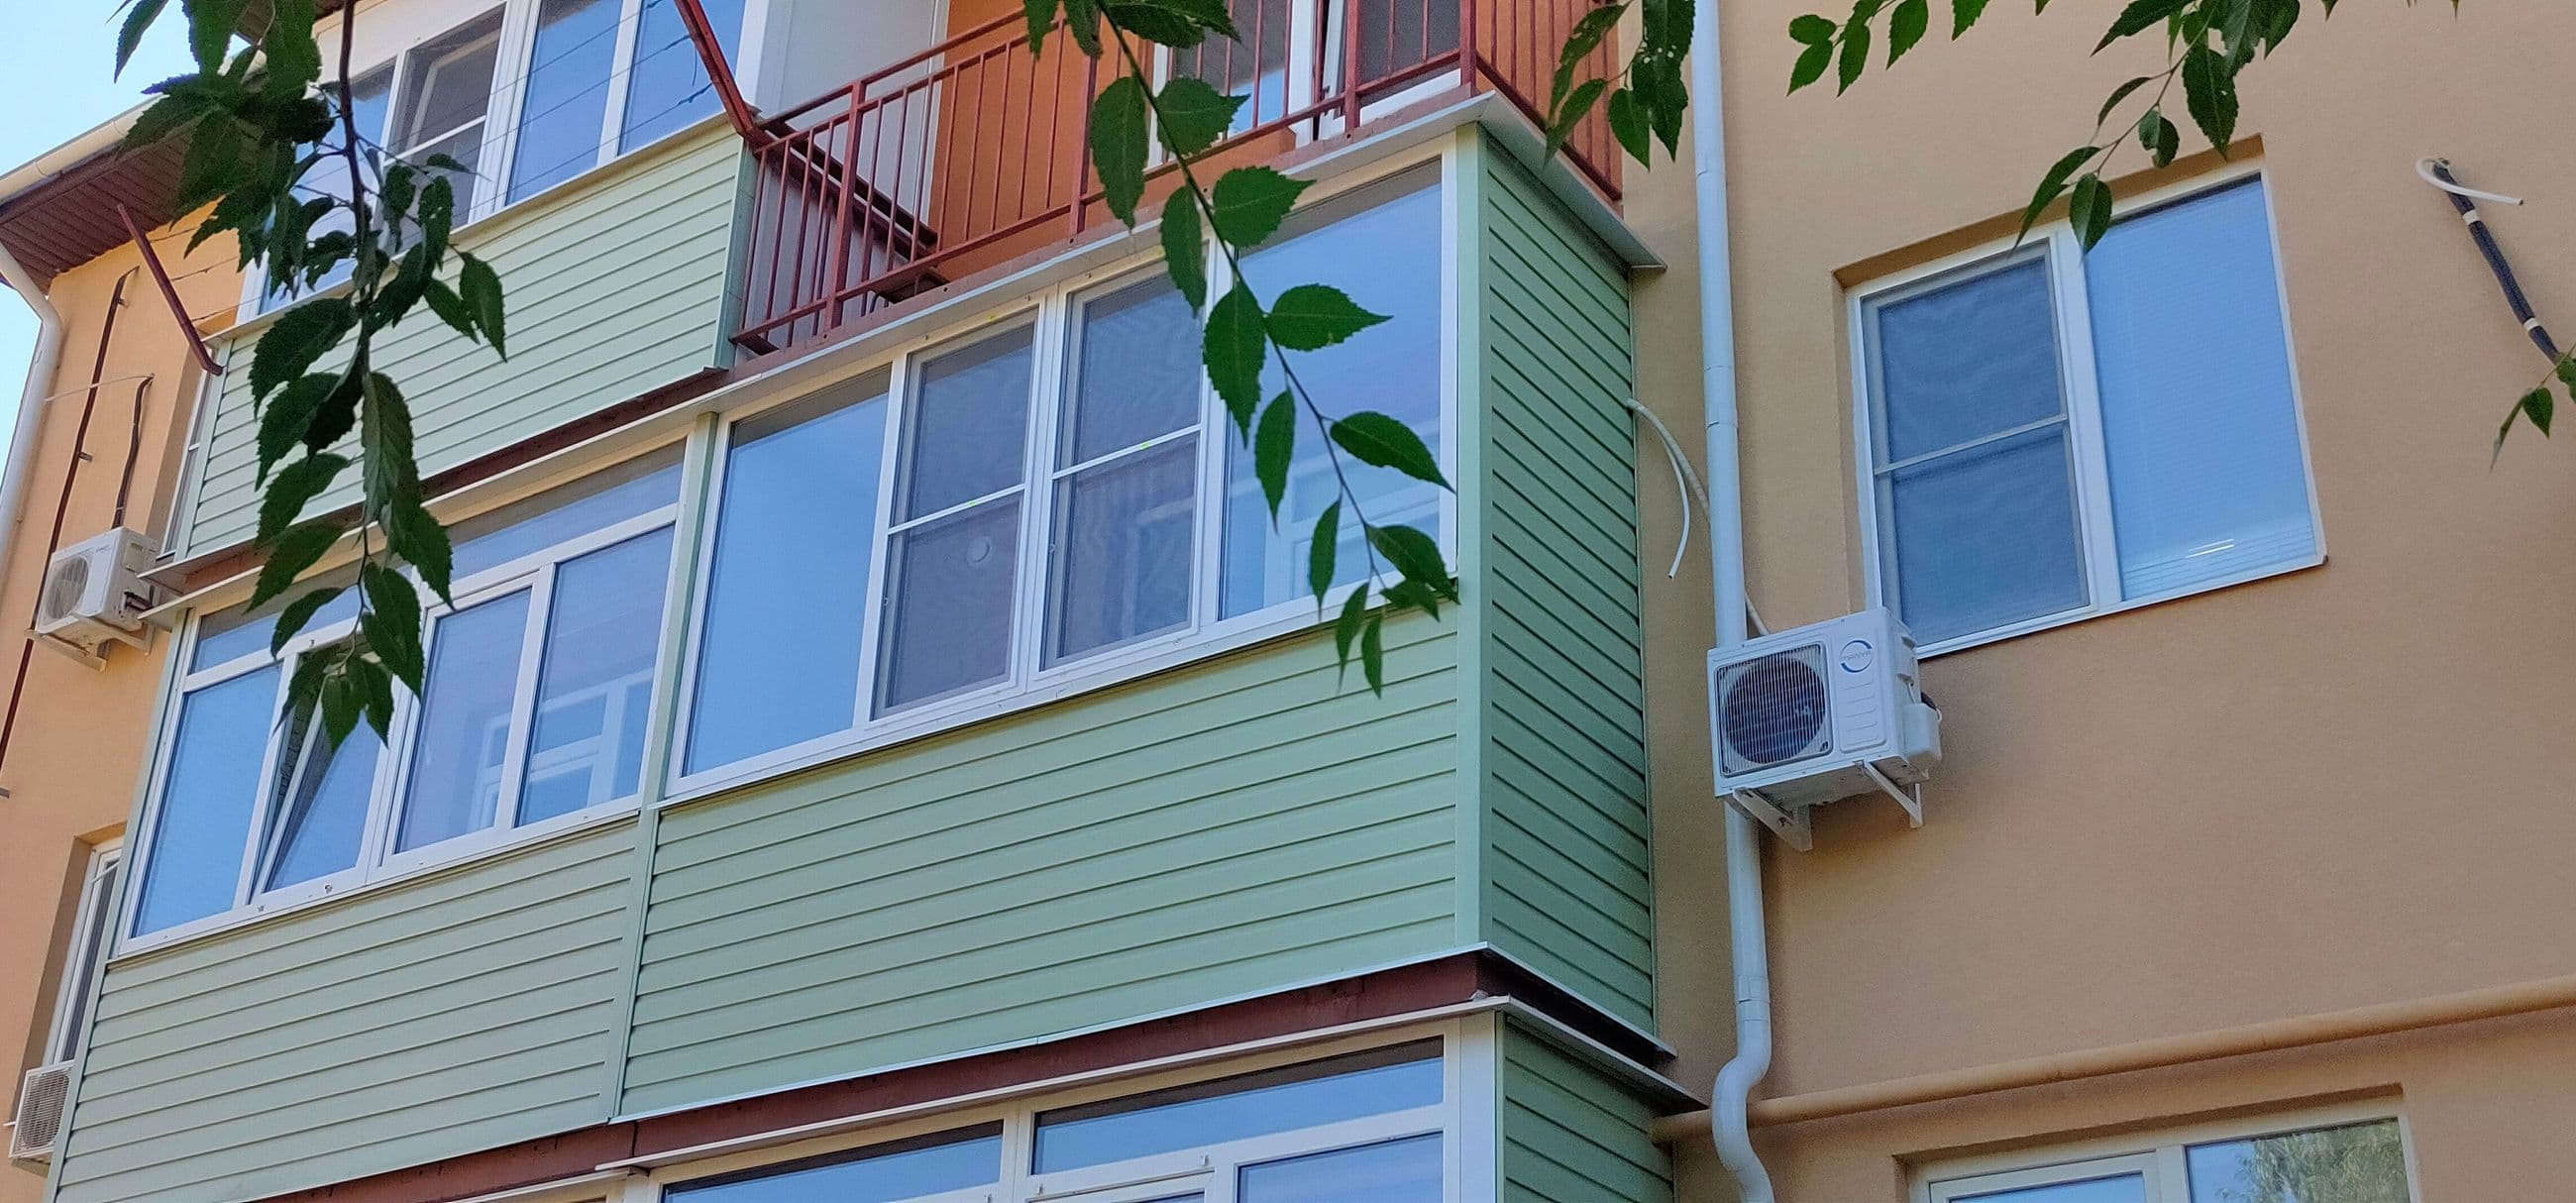 osteklenie-balkona-otdelka-balkona-plastikovye-okna